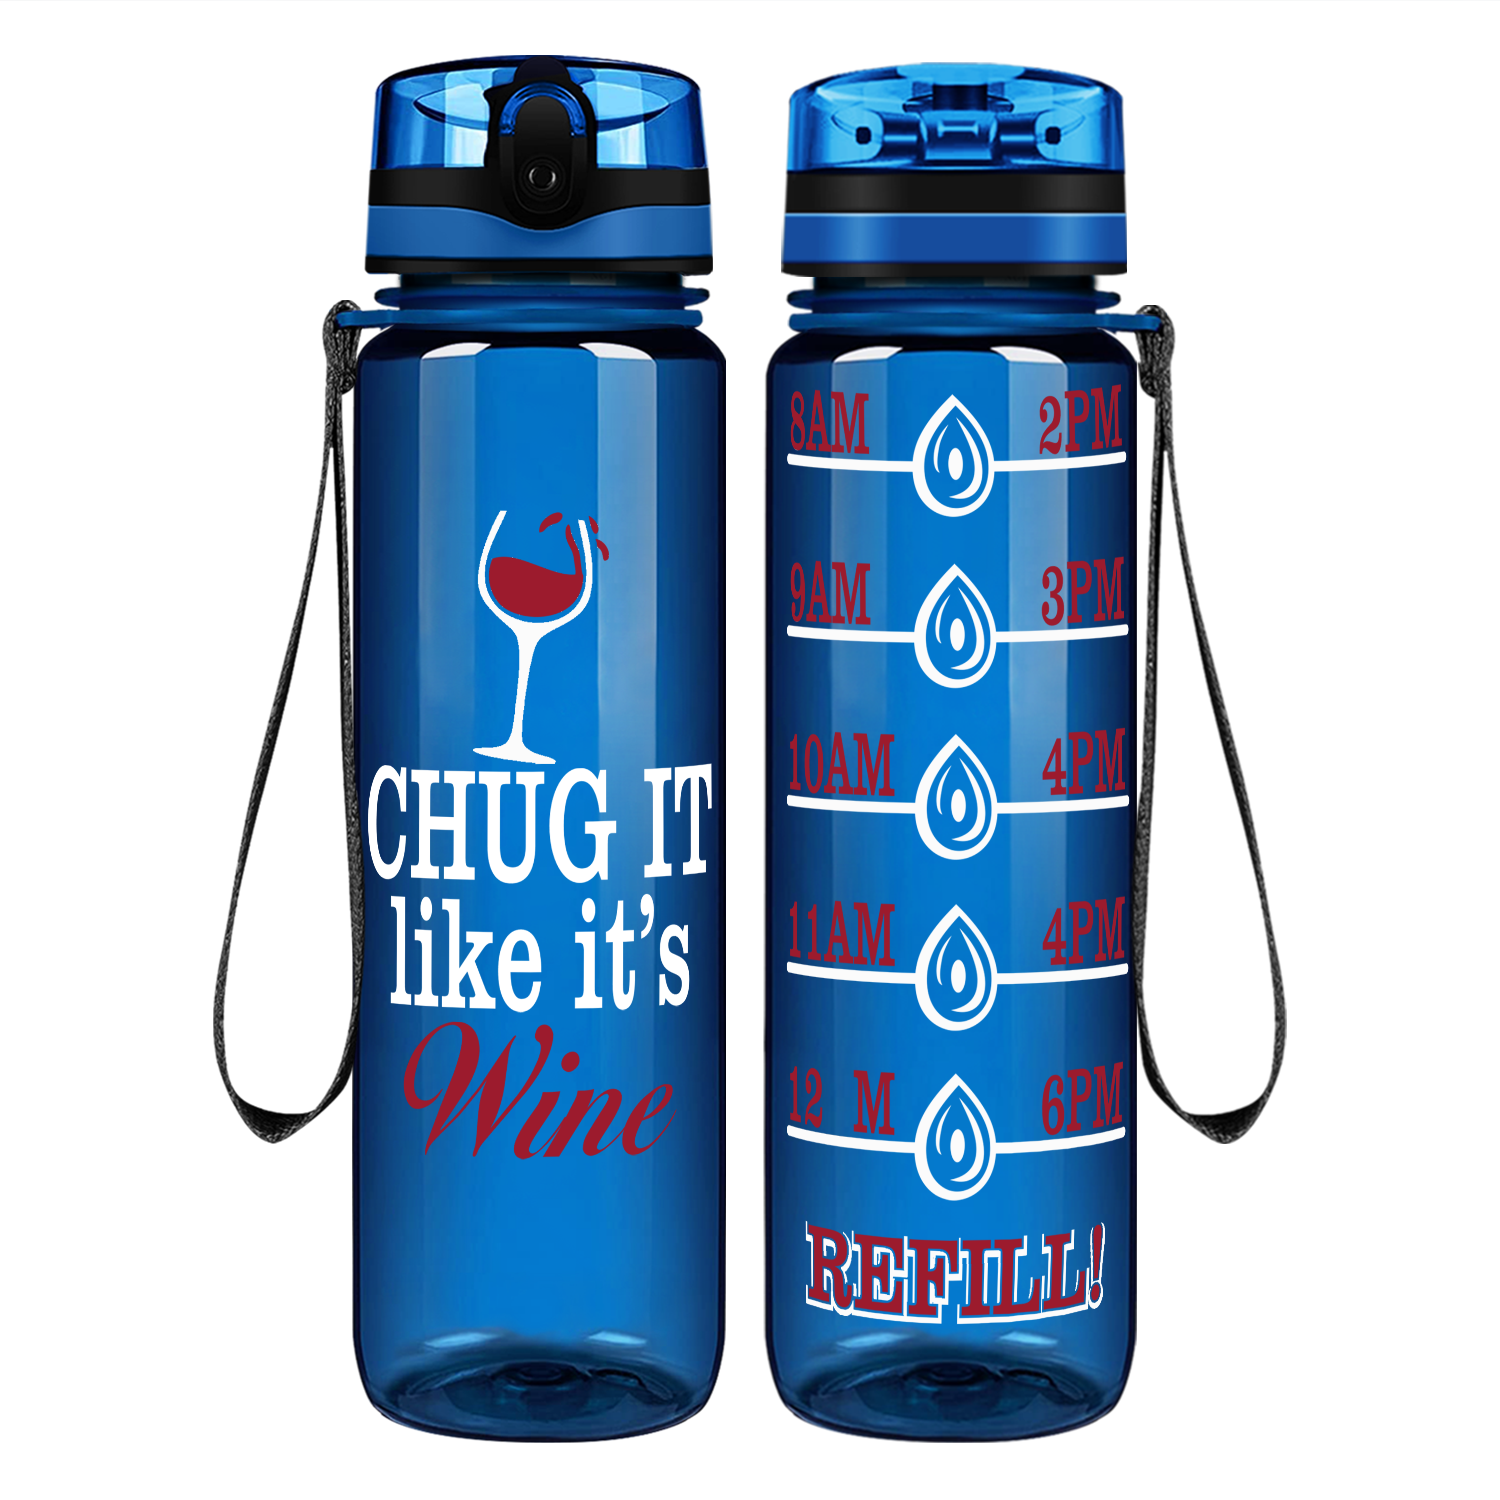 Chug It Like It's Wine Water Bottle Black Gloss